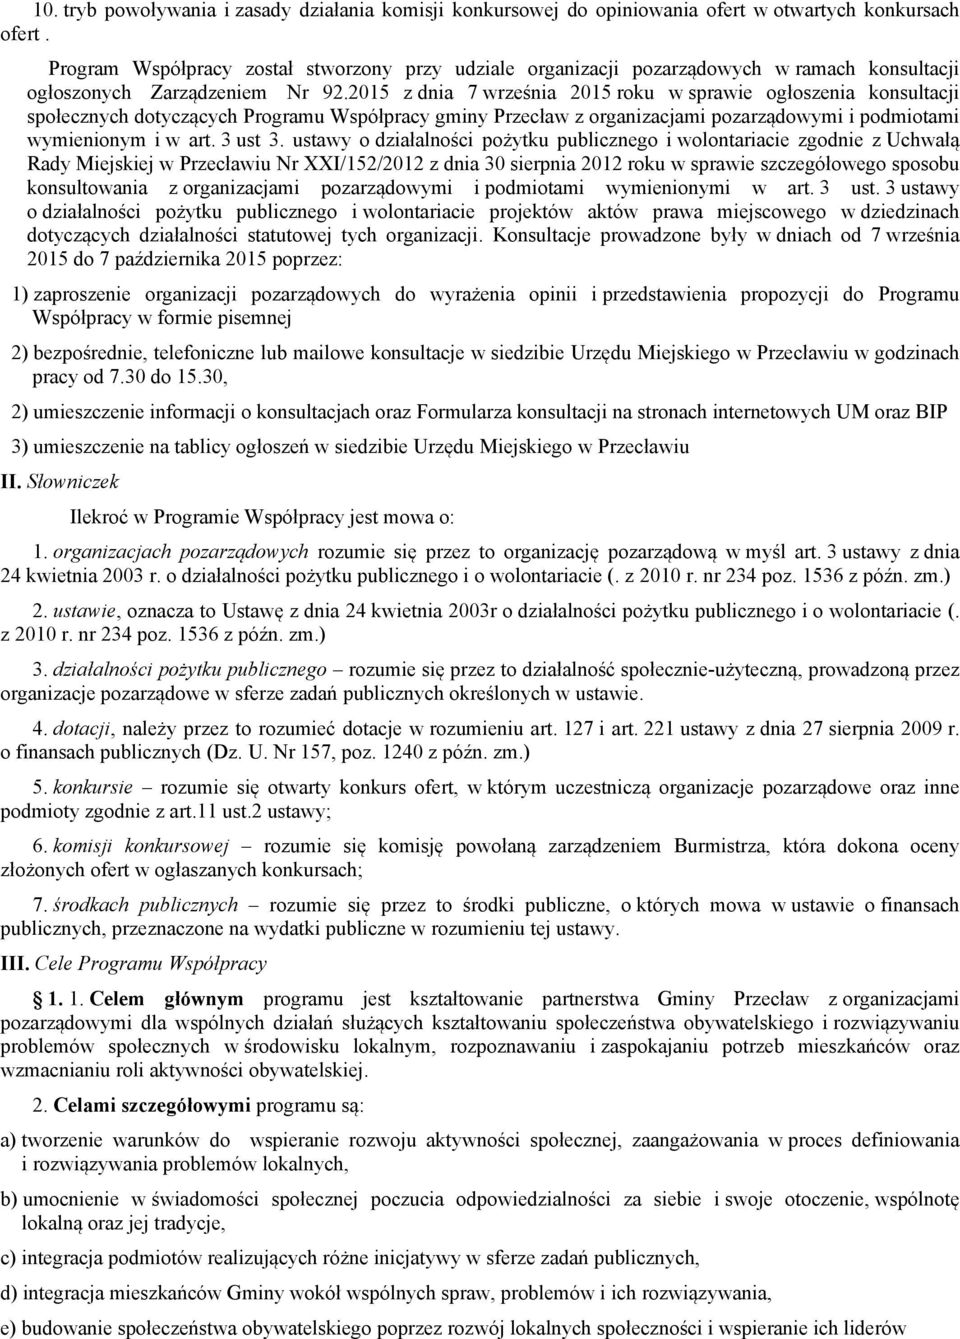 2015 z dnia 7 września 2015 roku w sprawie ogłoszenia konsultacji społecznych dotyczących Programu Współpracy gminy Przecław z organizacjami pozarządowymi i podmiotami wymienionym i w art. 3 ust 3.